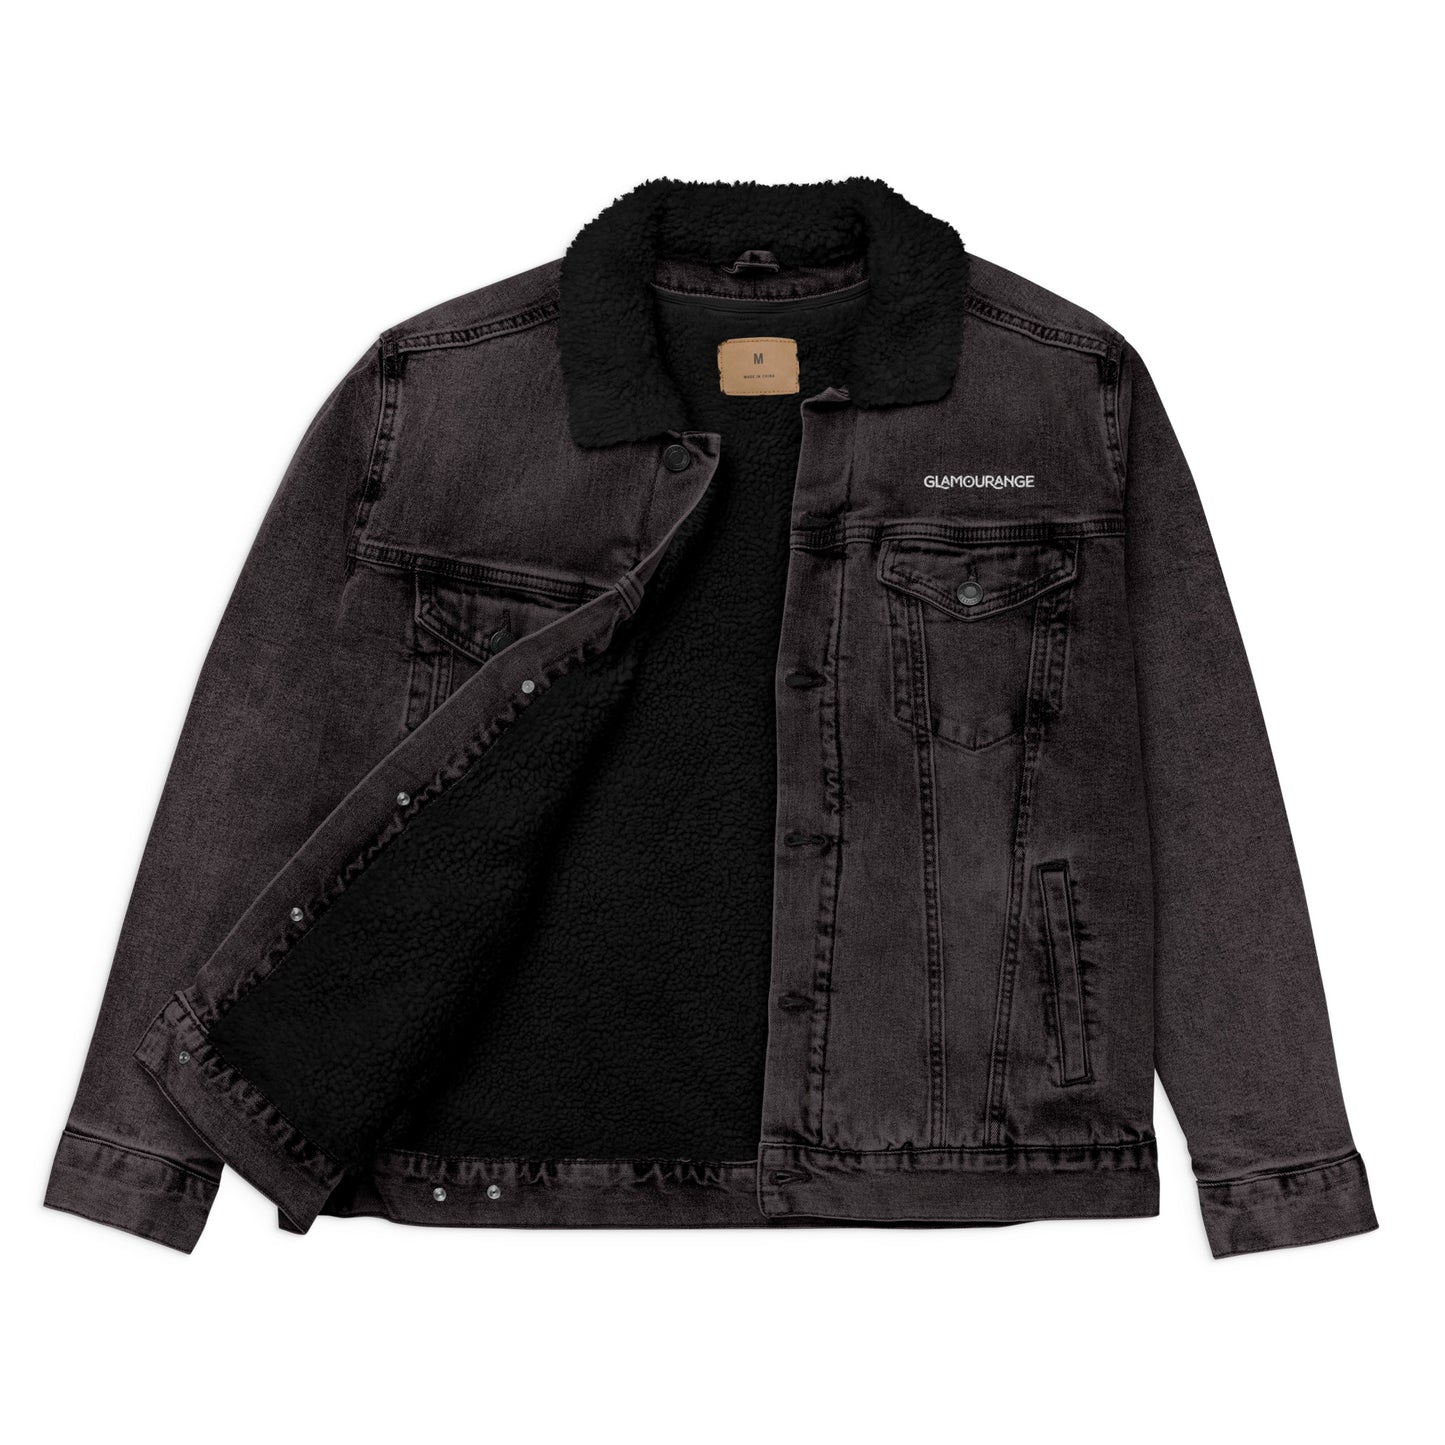 Denim Jacket Black For Men (Glamourange Sherpa Denim Jackets Mens)